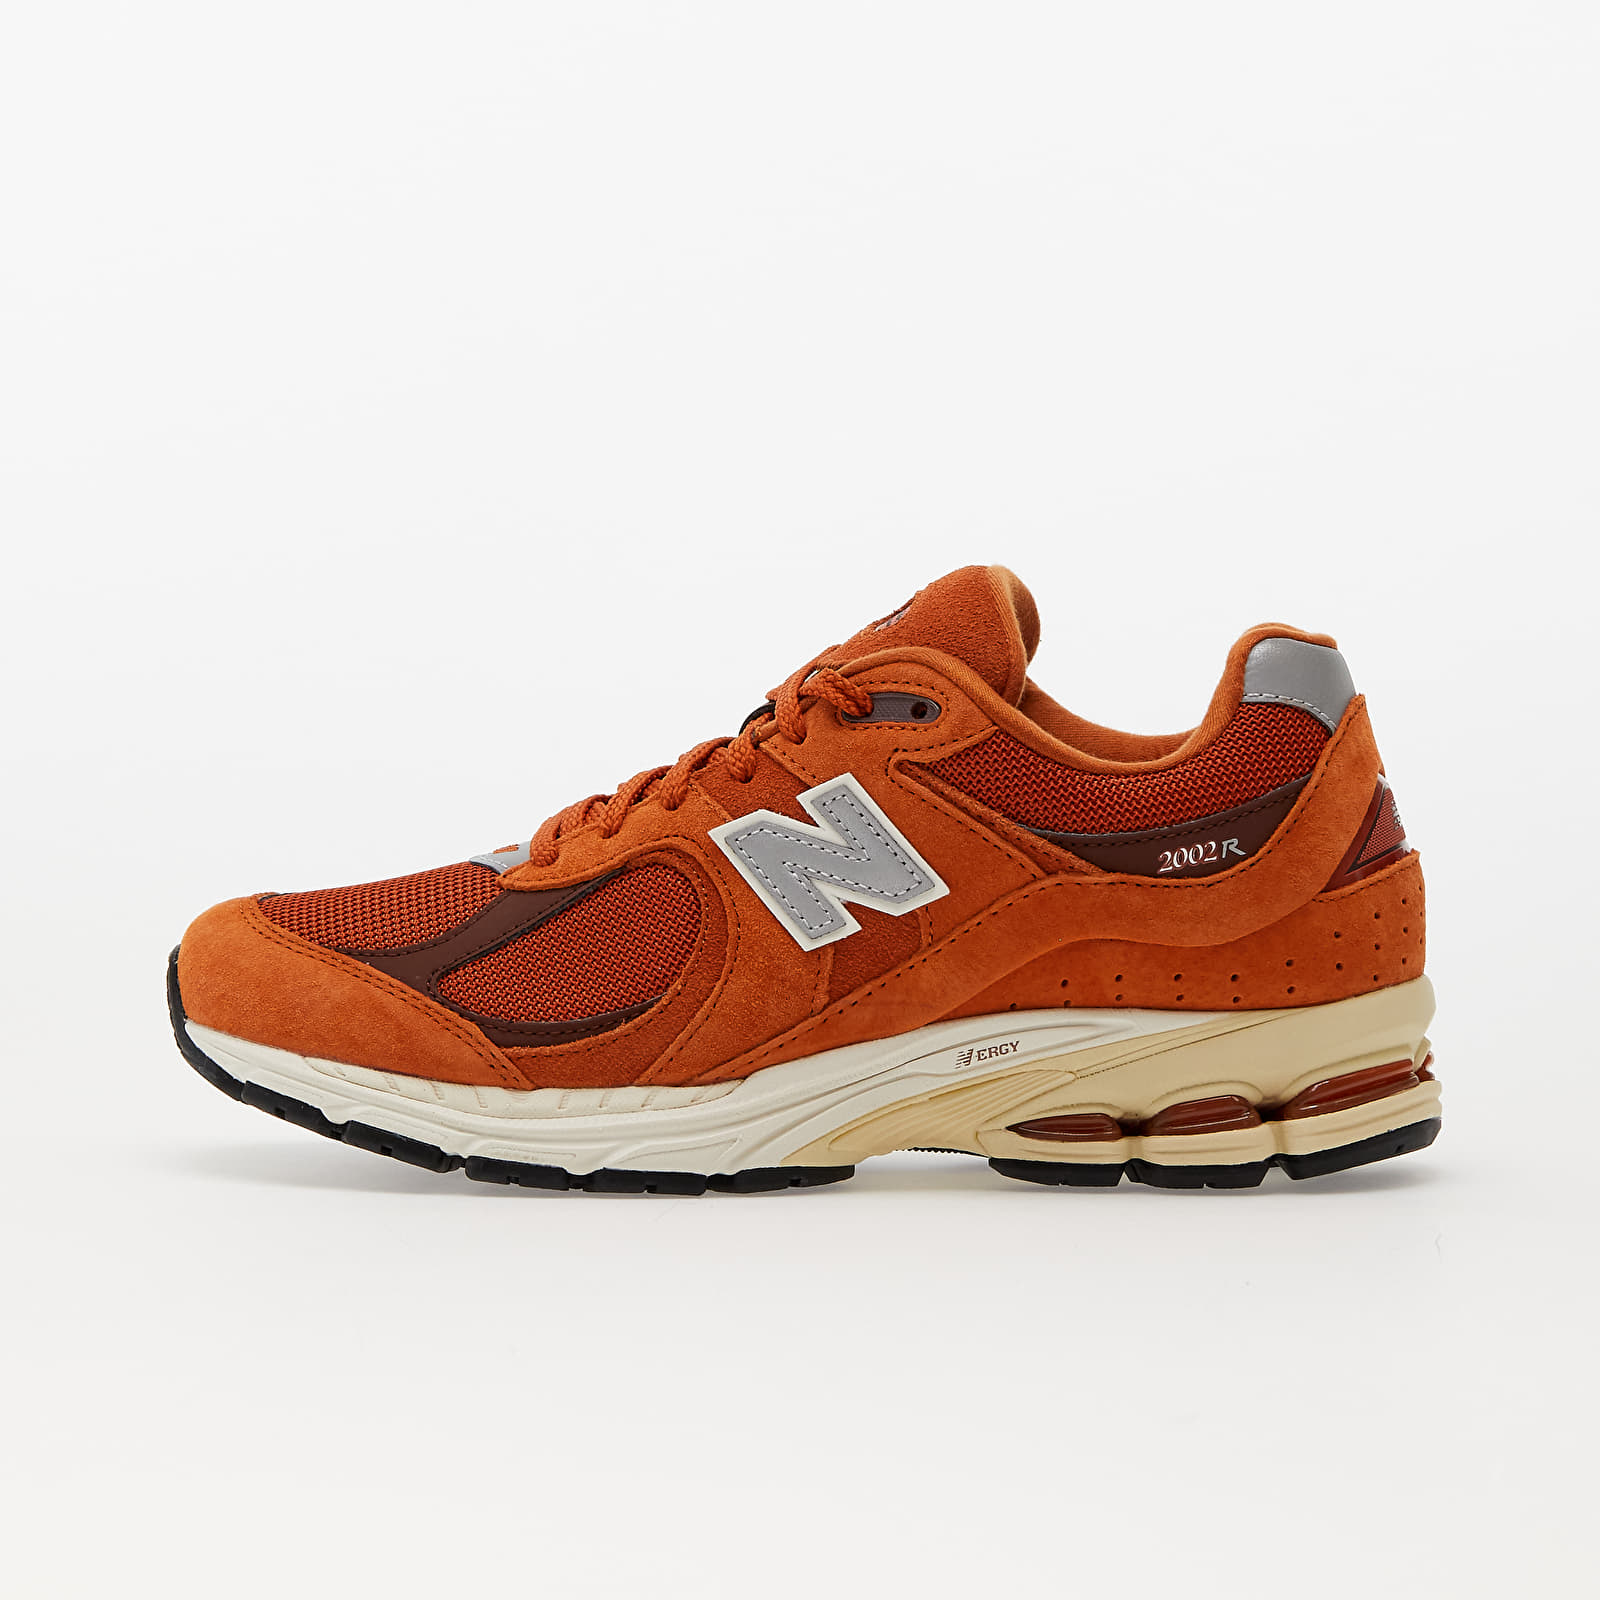 Turnschuhe und Schuhe für Männer New Balance 2002 Orange